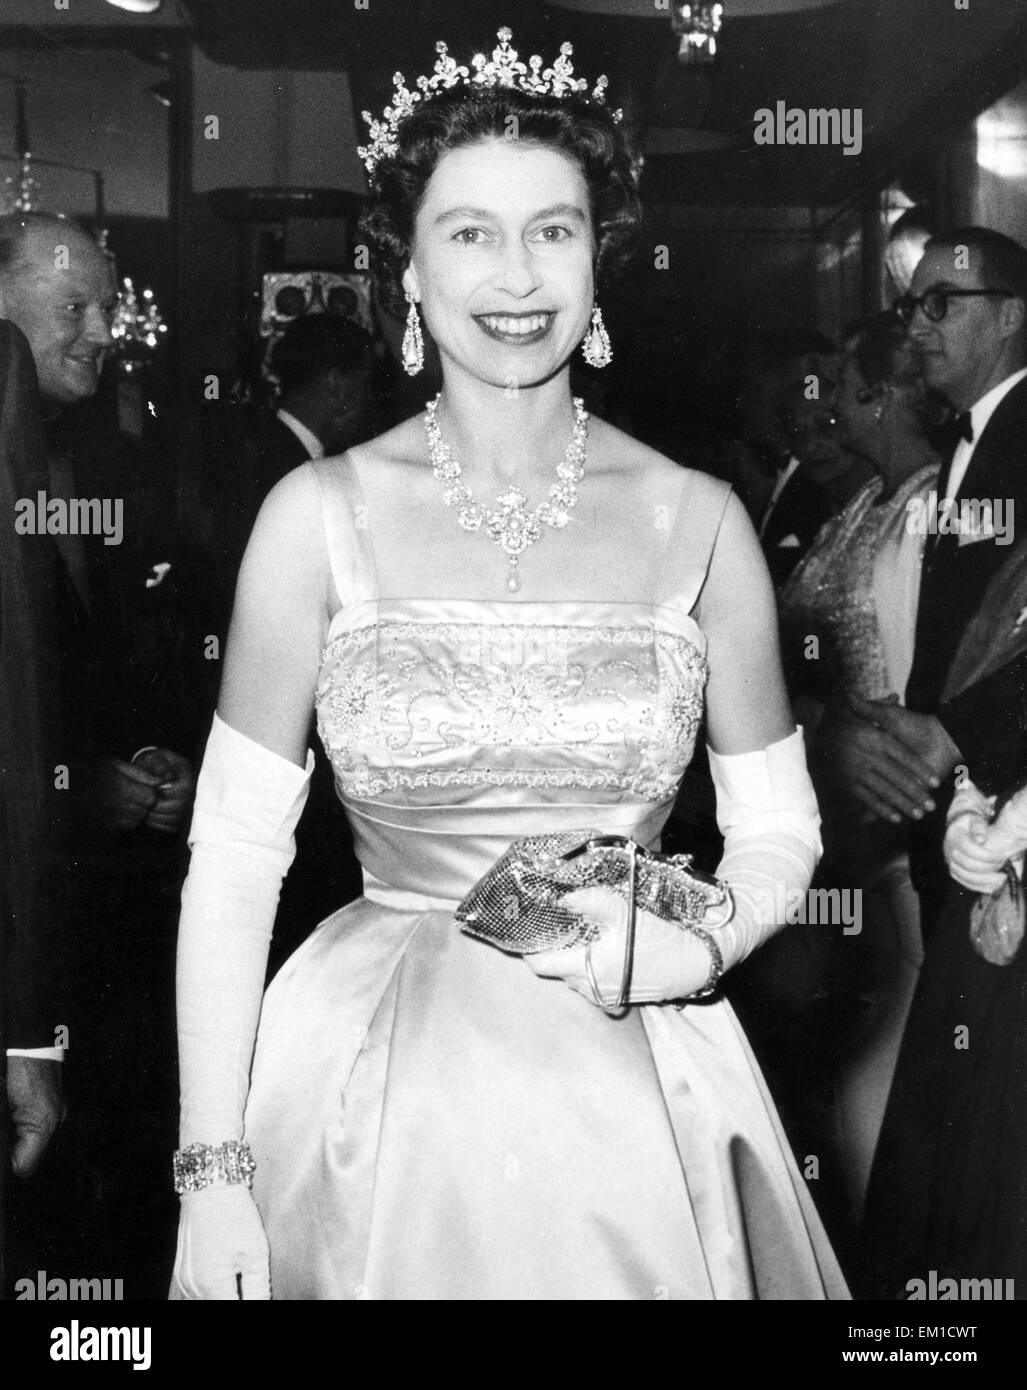 QUEEN ELIZABETH II in 1950 Stock Photo